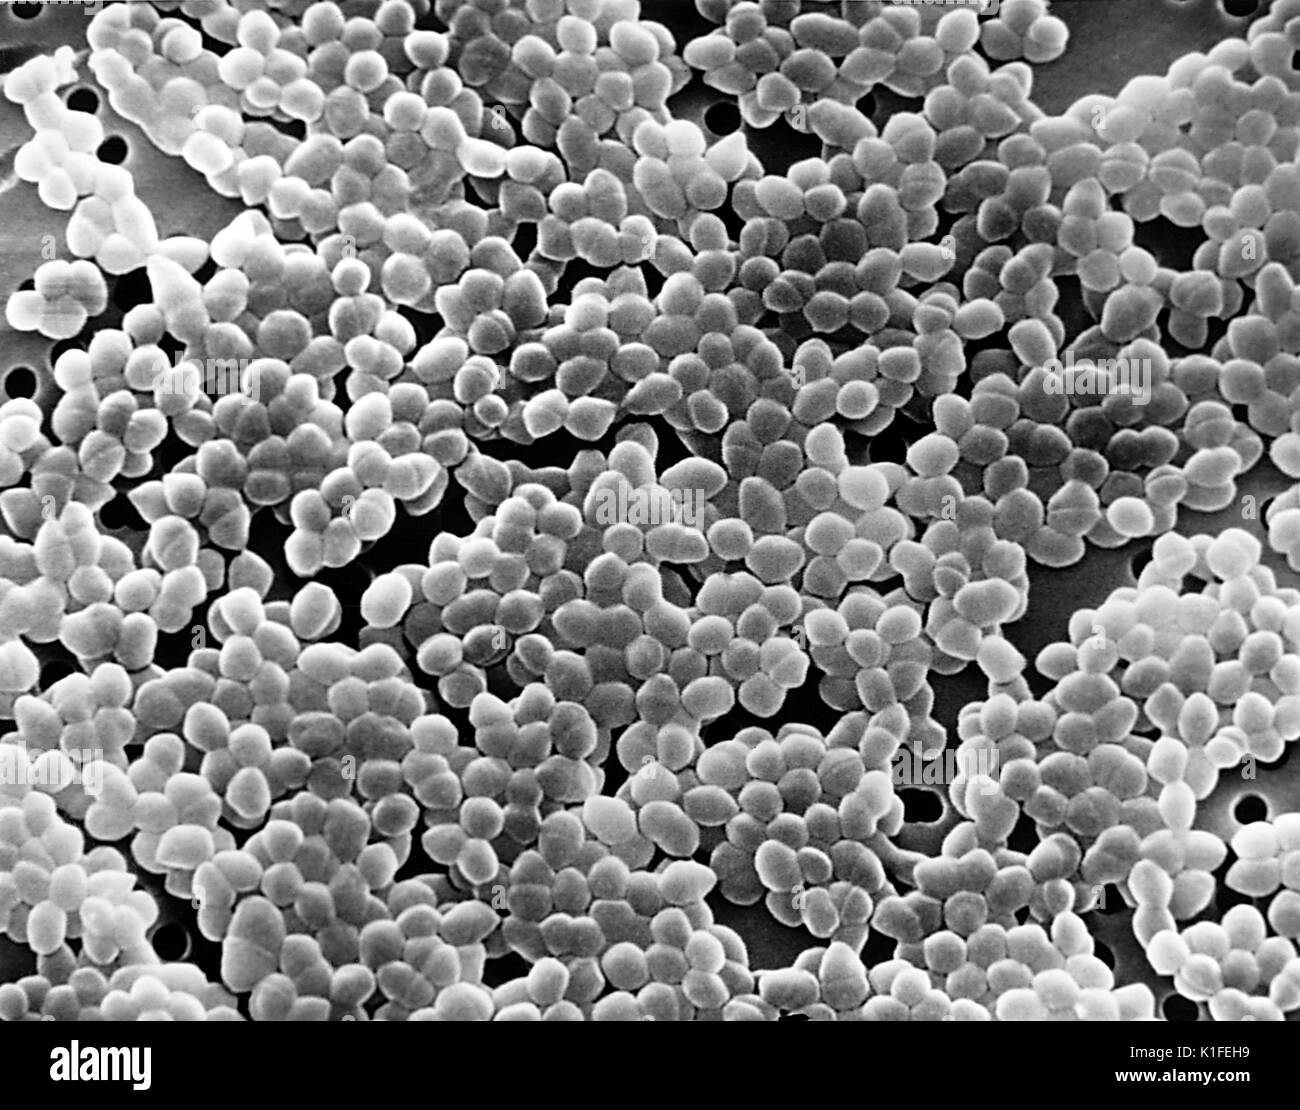 Diese Scanning Electron Micrograph (SEM) eine große Anzahl von Gram-positiven Bakterien Enterococcus Sp.. Sie PHIL 12802, für eine Digital-eingefärbte Version dieses Bildes. Mit freundlicher CDC. 1990. Stockfoto